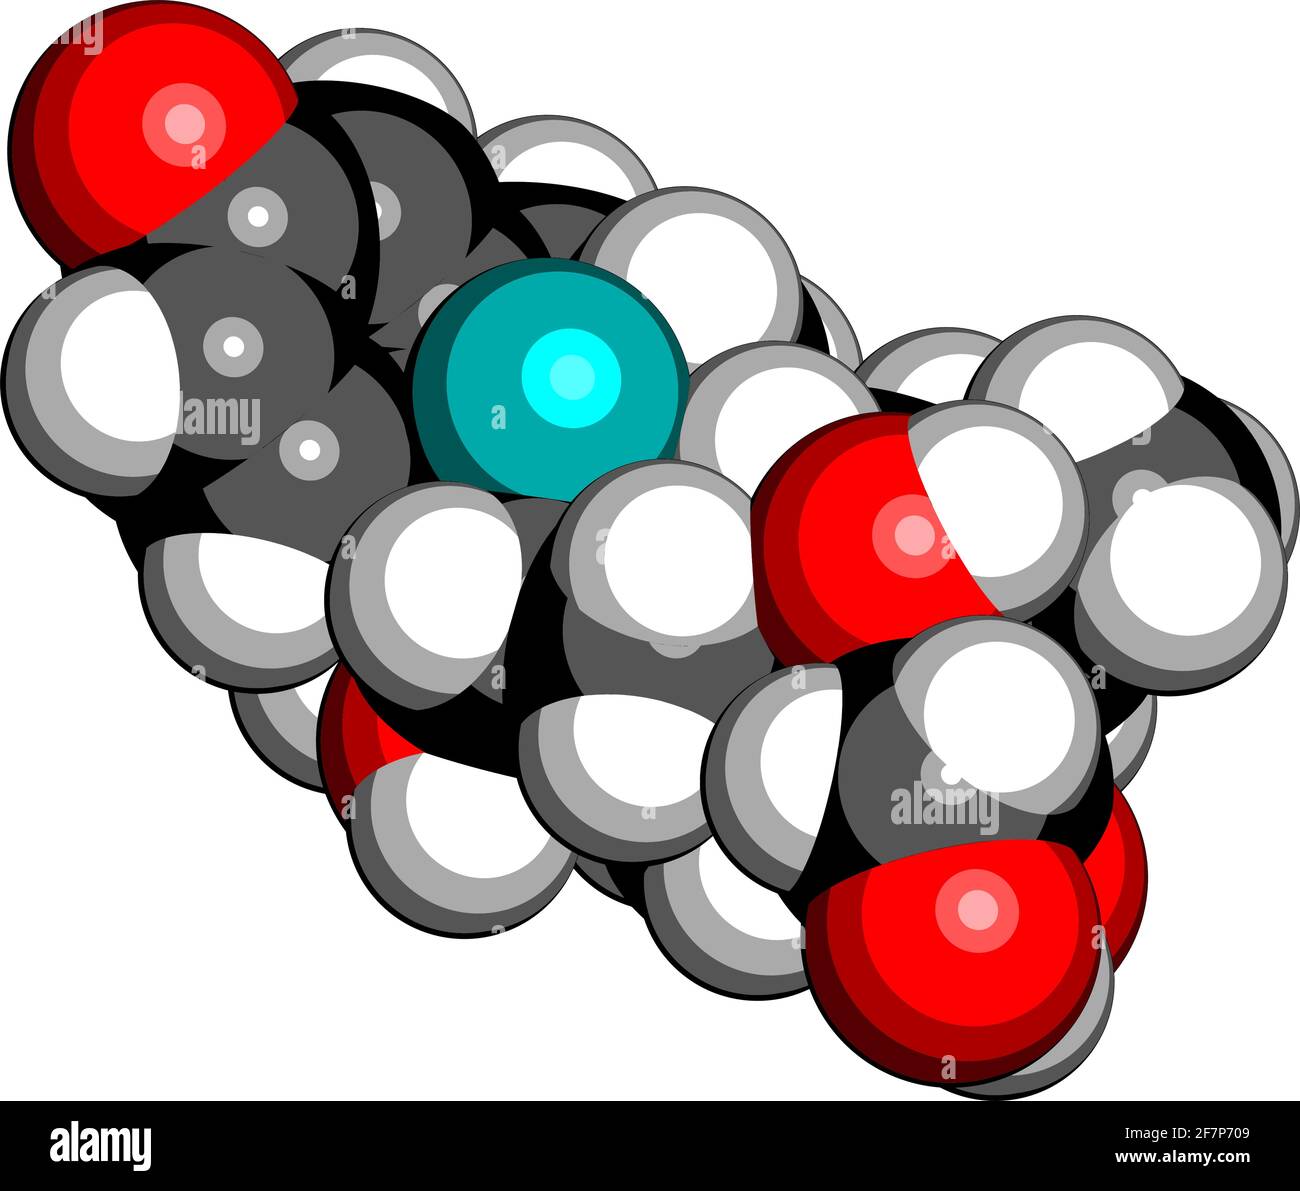 Dexamethason Glucocorticoid-Medikament. Steroid-Medikament mit entzündungshemmenden und immunsuppressiven Eigenschaften. 3D-Rendering. Atome werden als Kugel dargestellt Stock Vektor